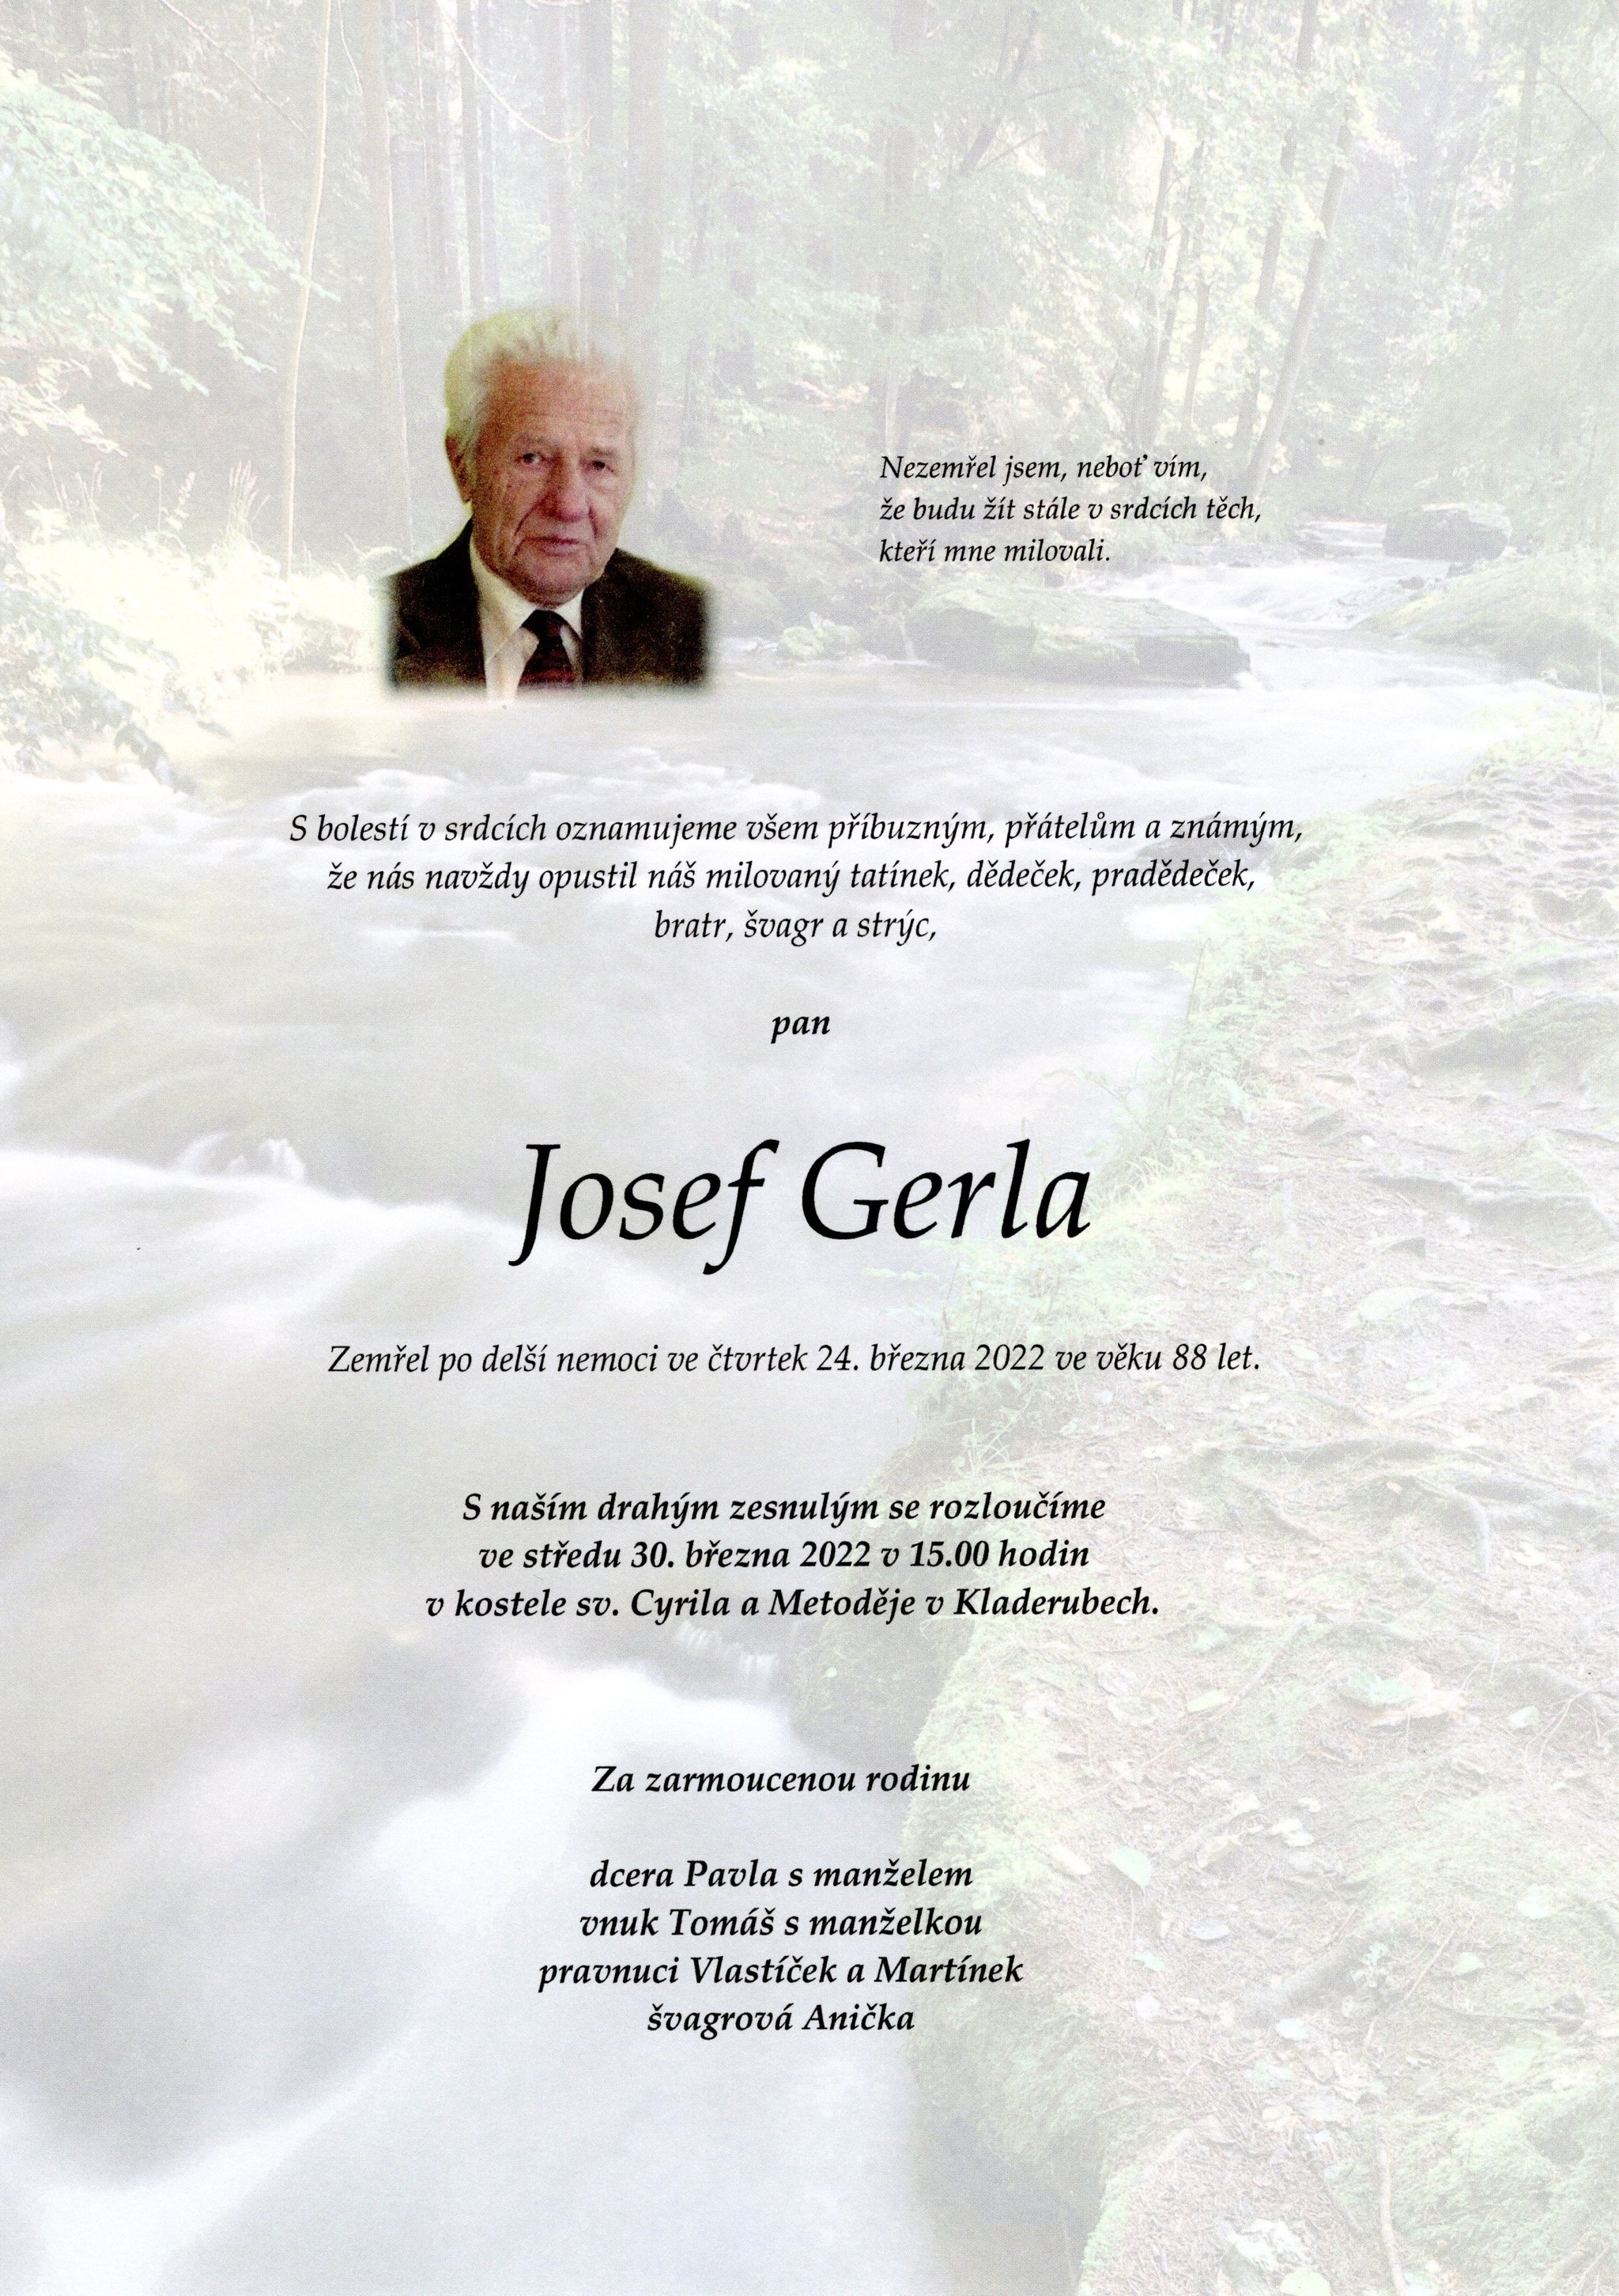 Josef Gerla